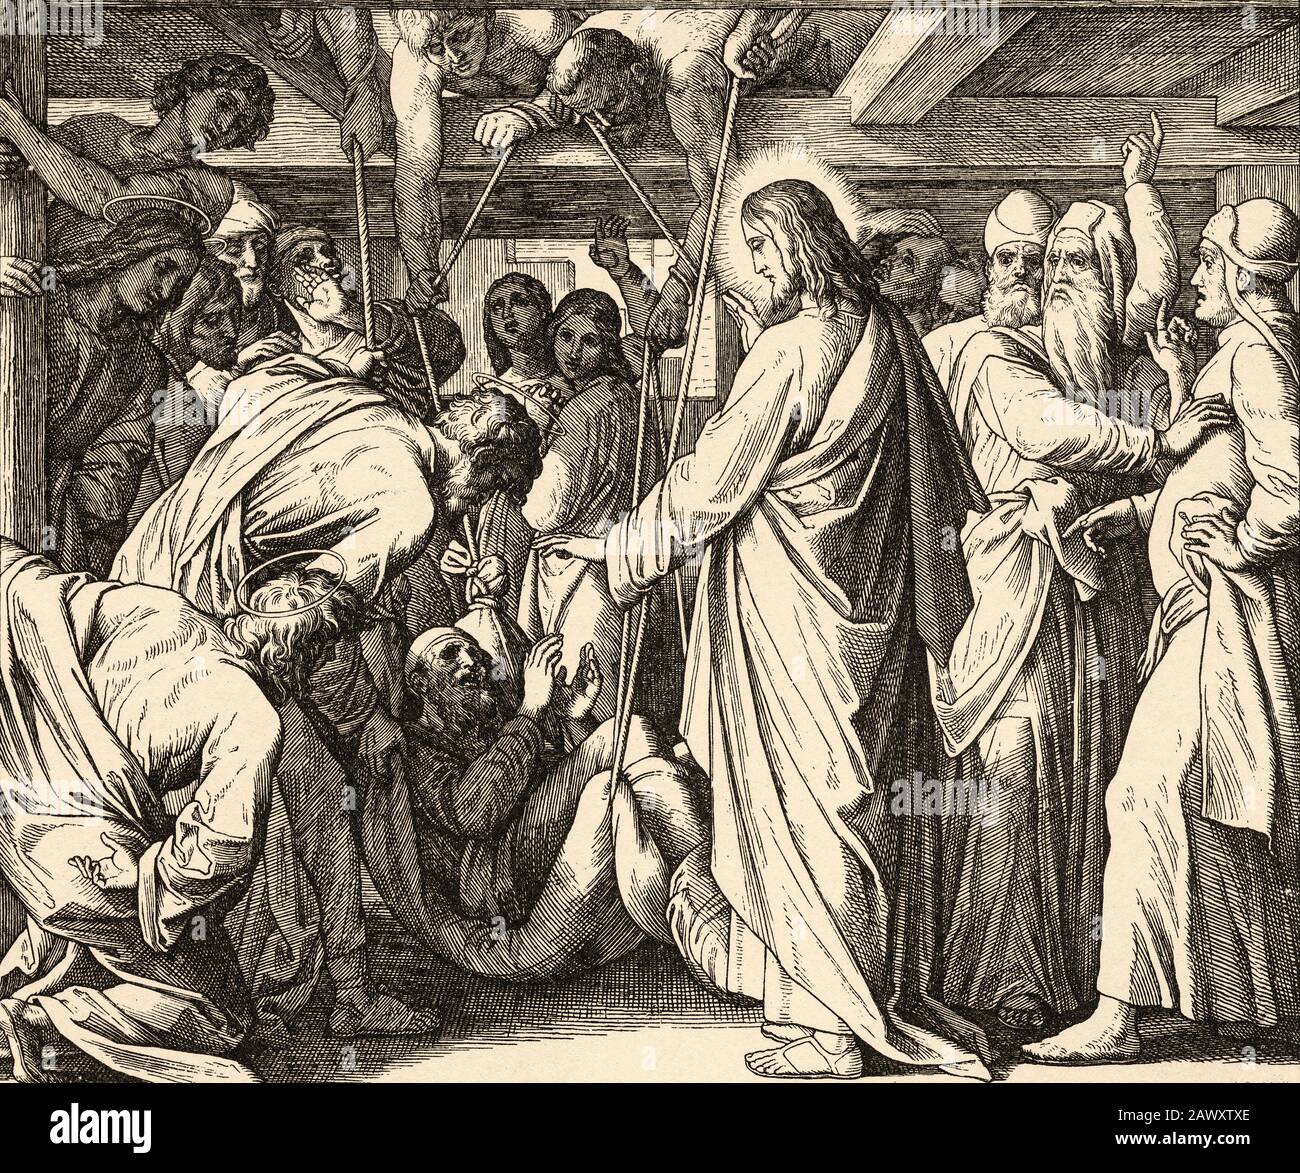 Die Heilung eines Gicht. Unser Herr Jesus verzeiht die Schuld und rettet die Lähmung. Lukasbuch, neutestamentliche biblische Geschichte. Alte Gravur Stockfoto